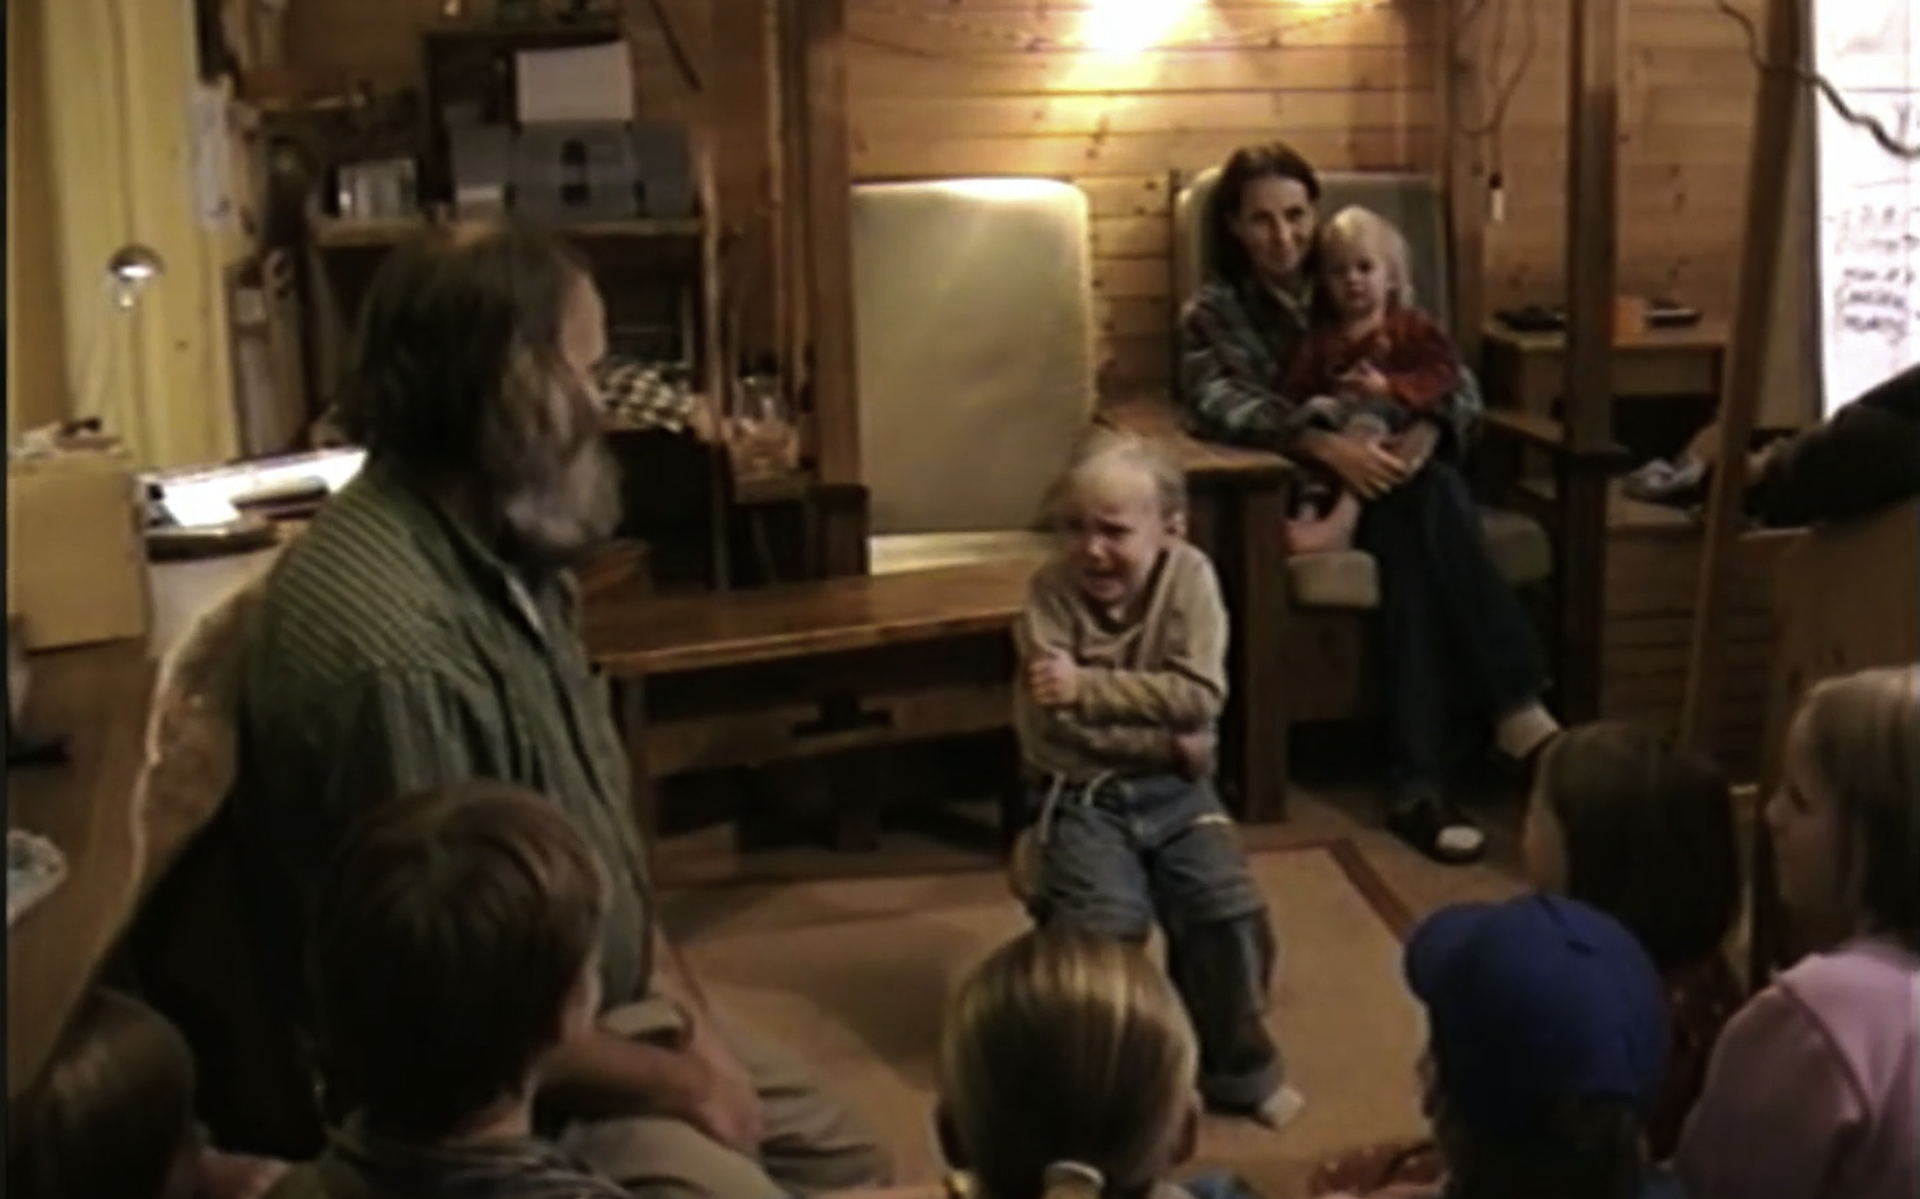 Lauw Afslachten Mier Documentaireserie 'De kinderen van Ruinerwold' maakt veel los. De reacties  op Twitter liegen er niet om - Leeuwarder Courant